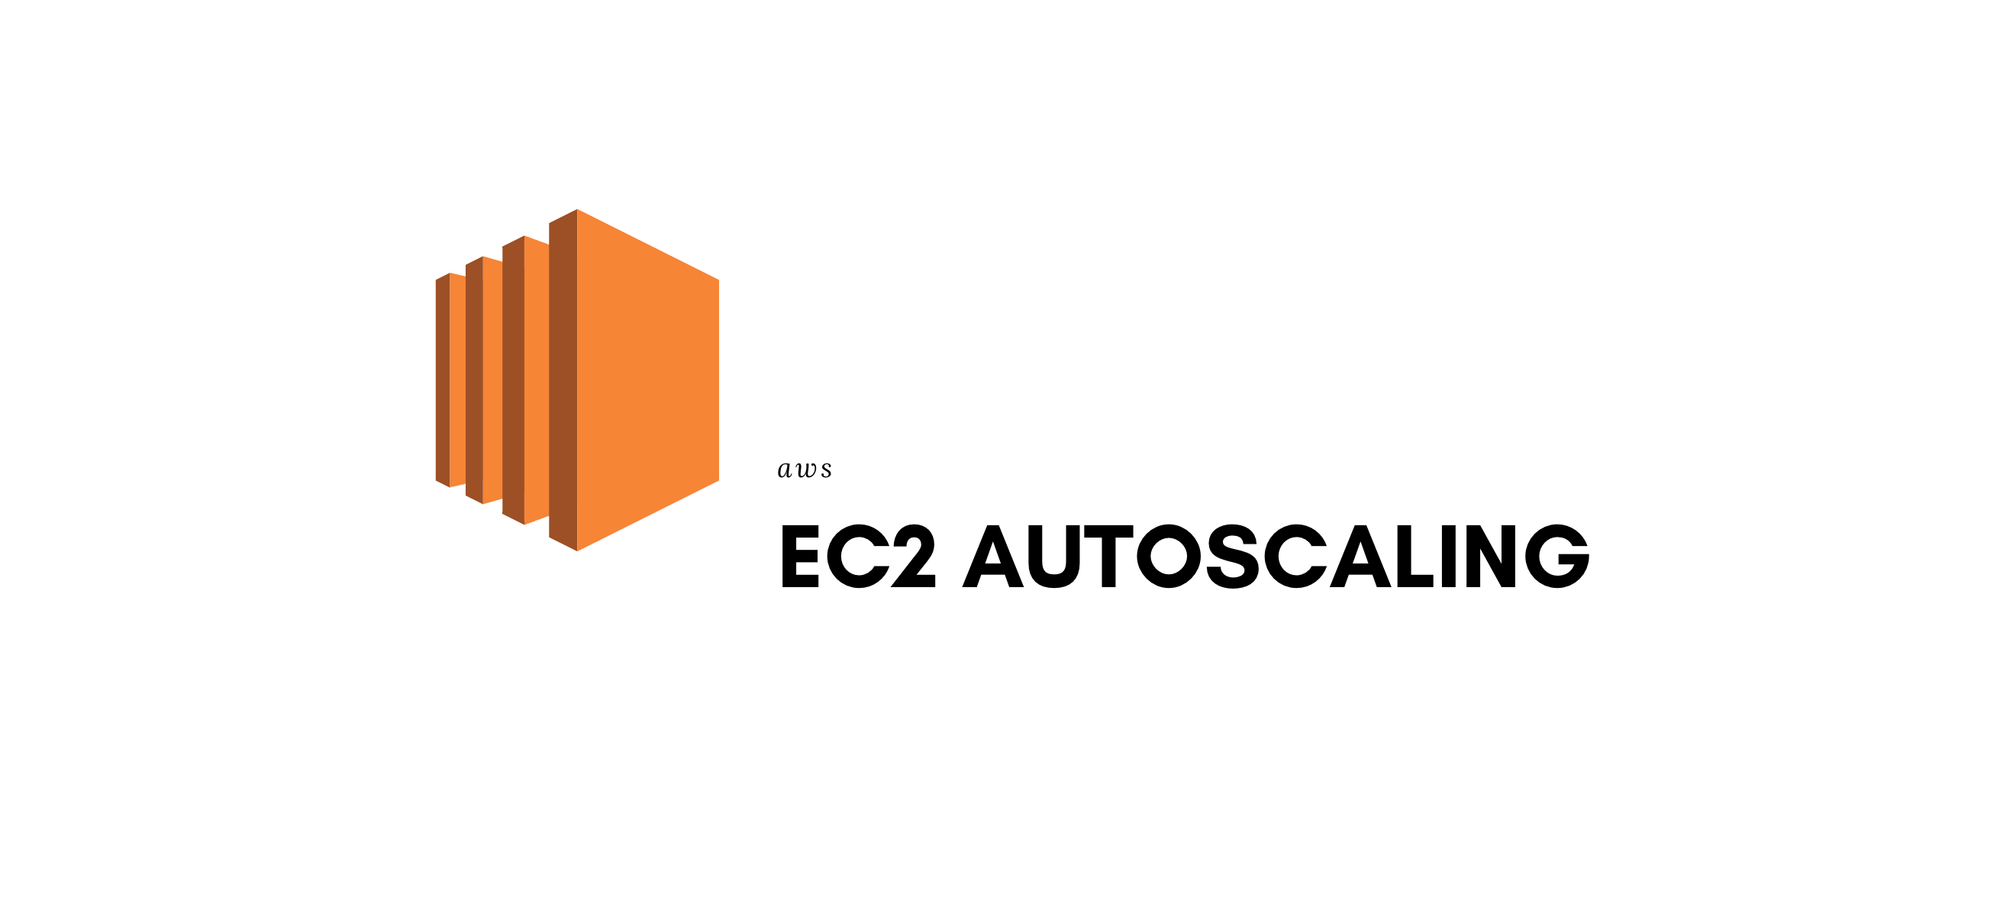 EC2 AutoScaling - aws_introduction[11]